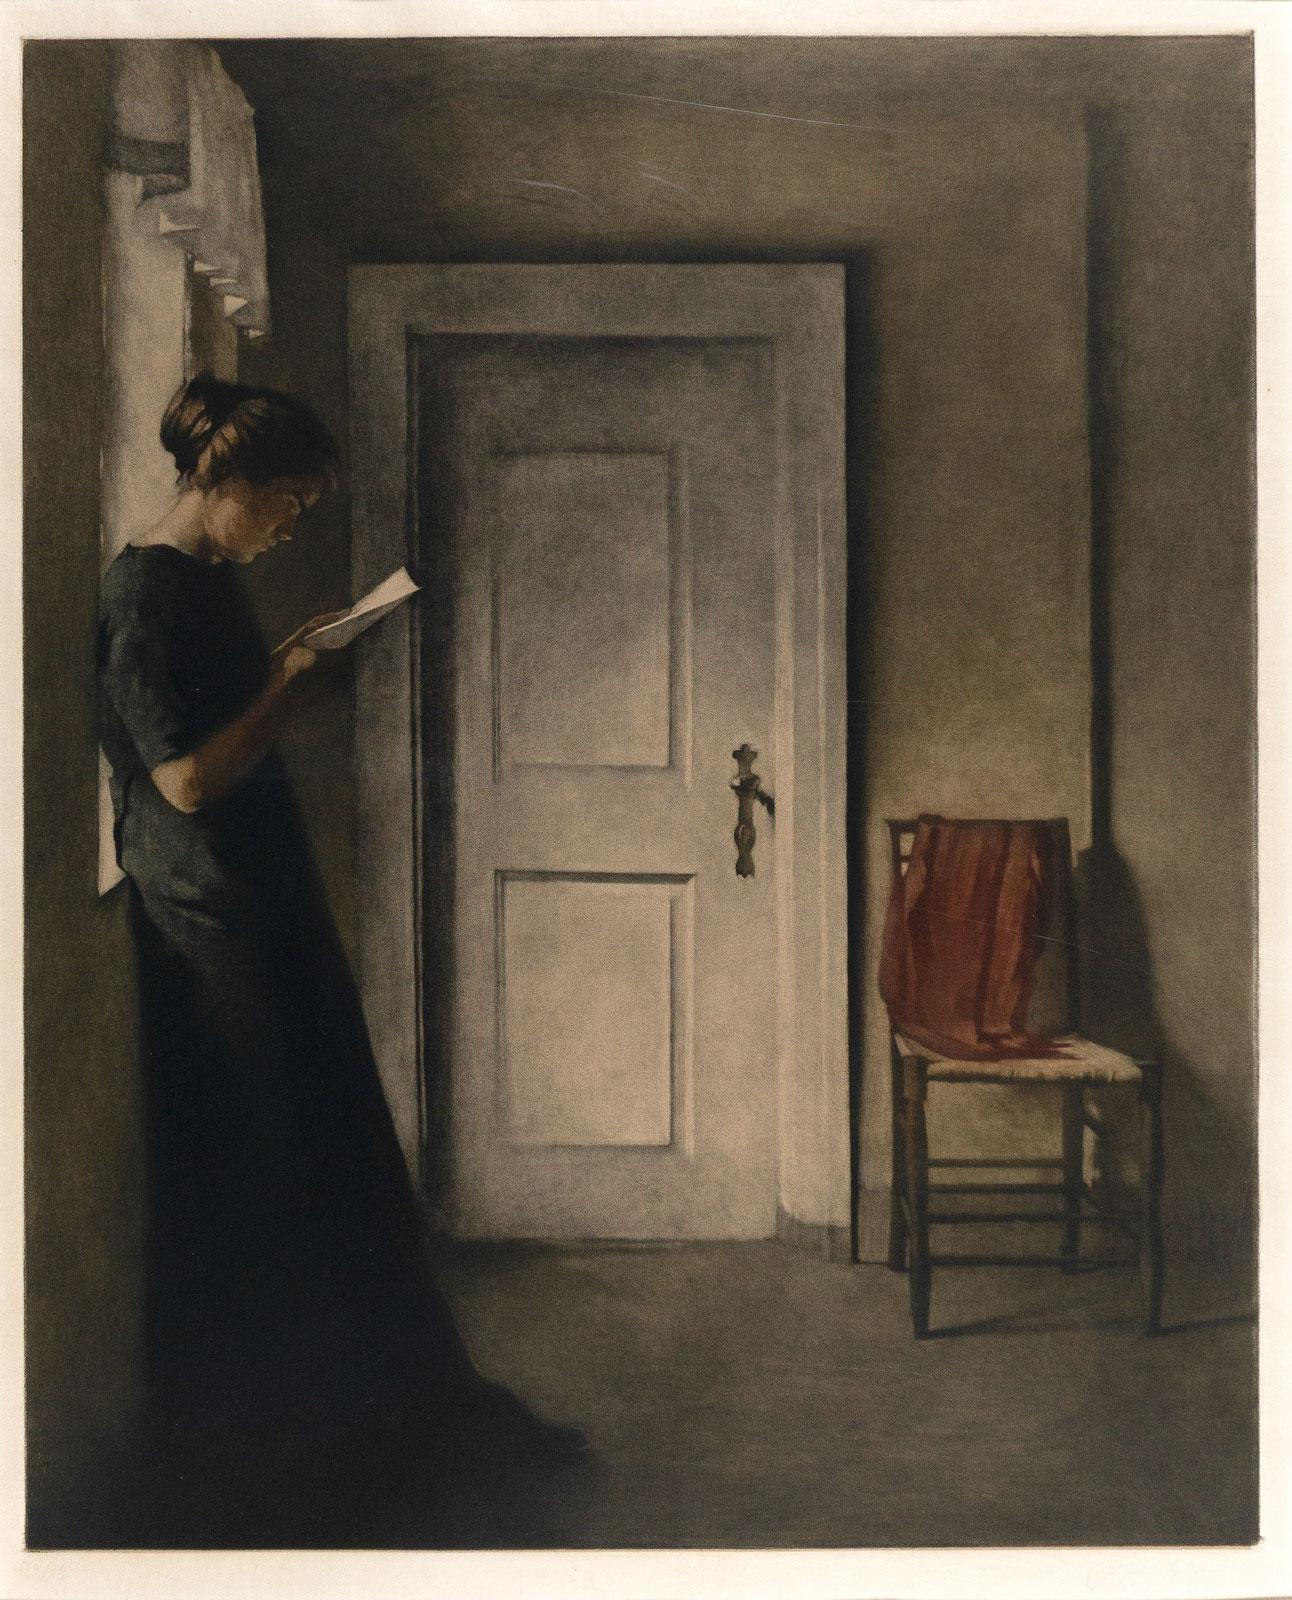 Inneneinrichtung mit rotem Schal (Junge Frau liest in diesem ruhigen, Vermeer-ähnlichen Interieur)  (Niederländische Schule), Print, von Peter Ilsted